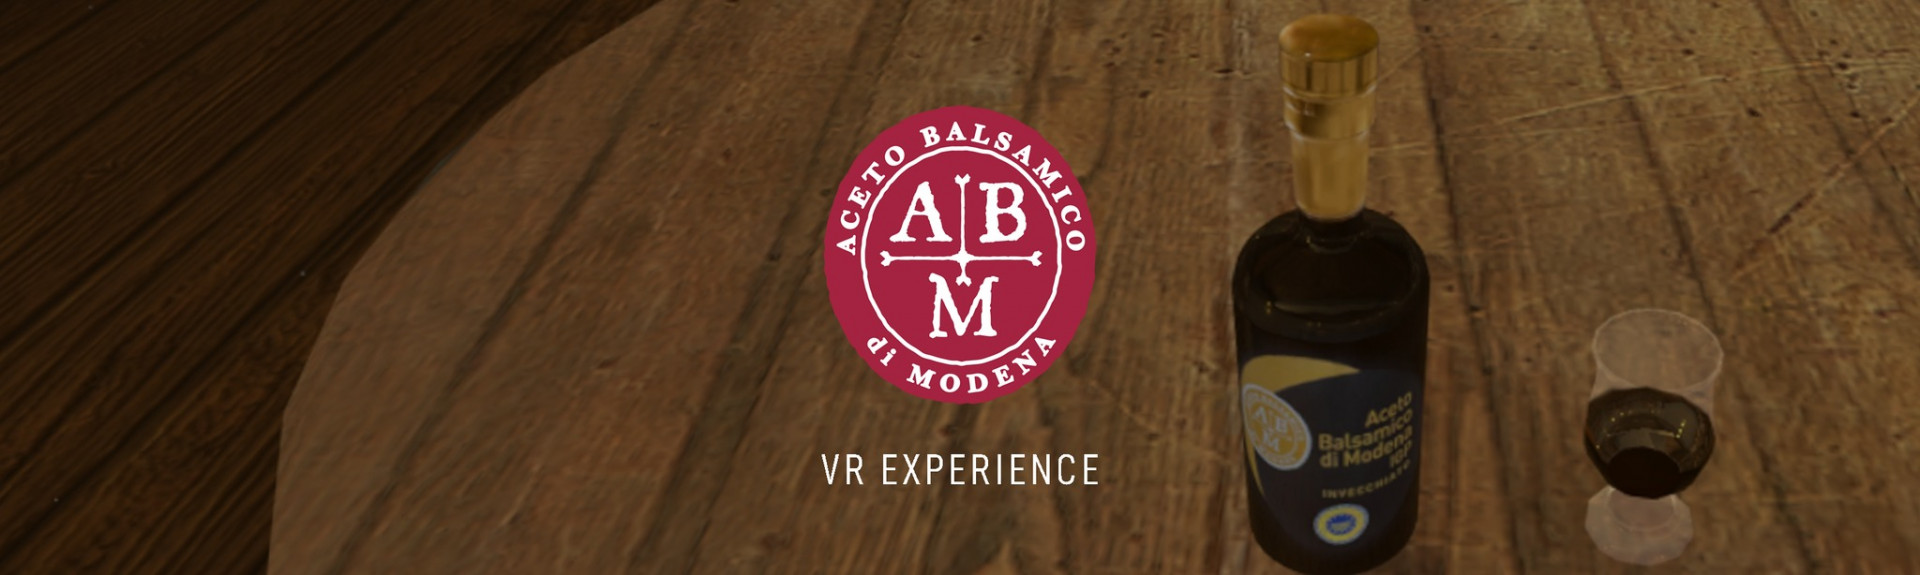 Aceto Balsamico di Modena - VR Experience